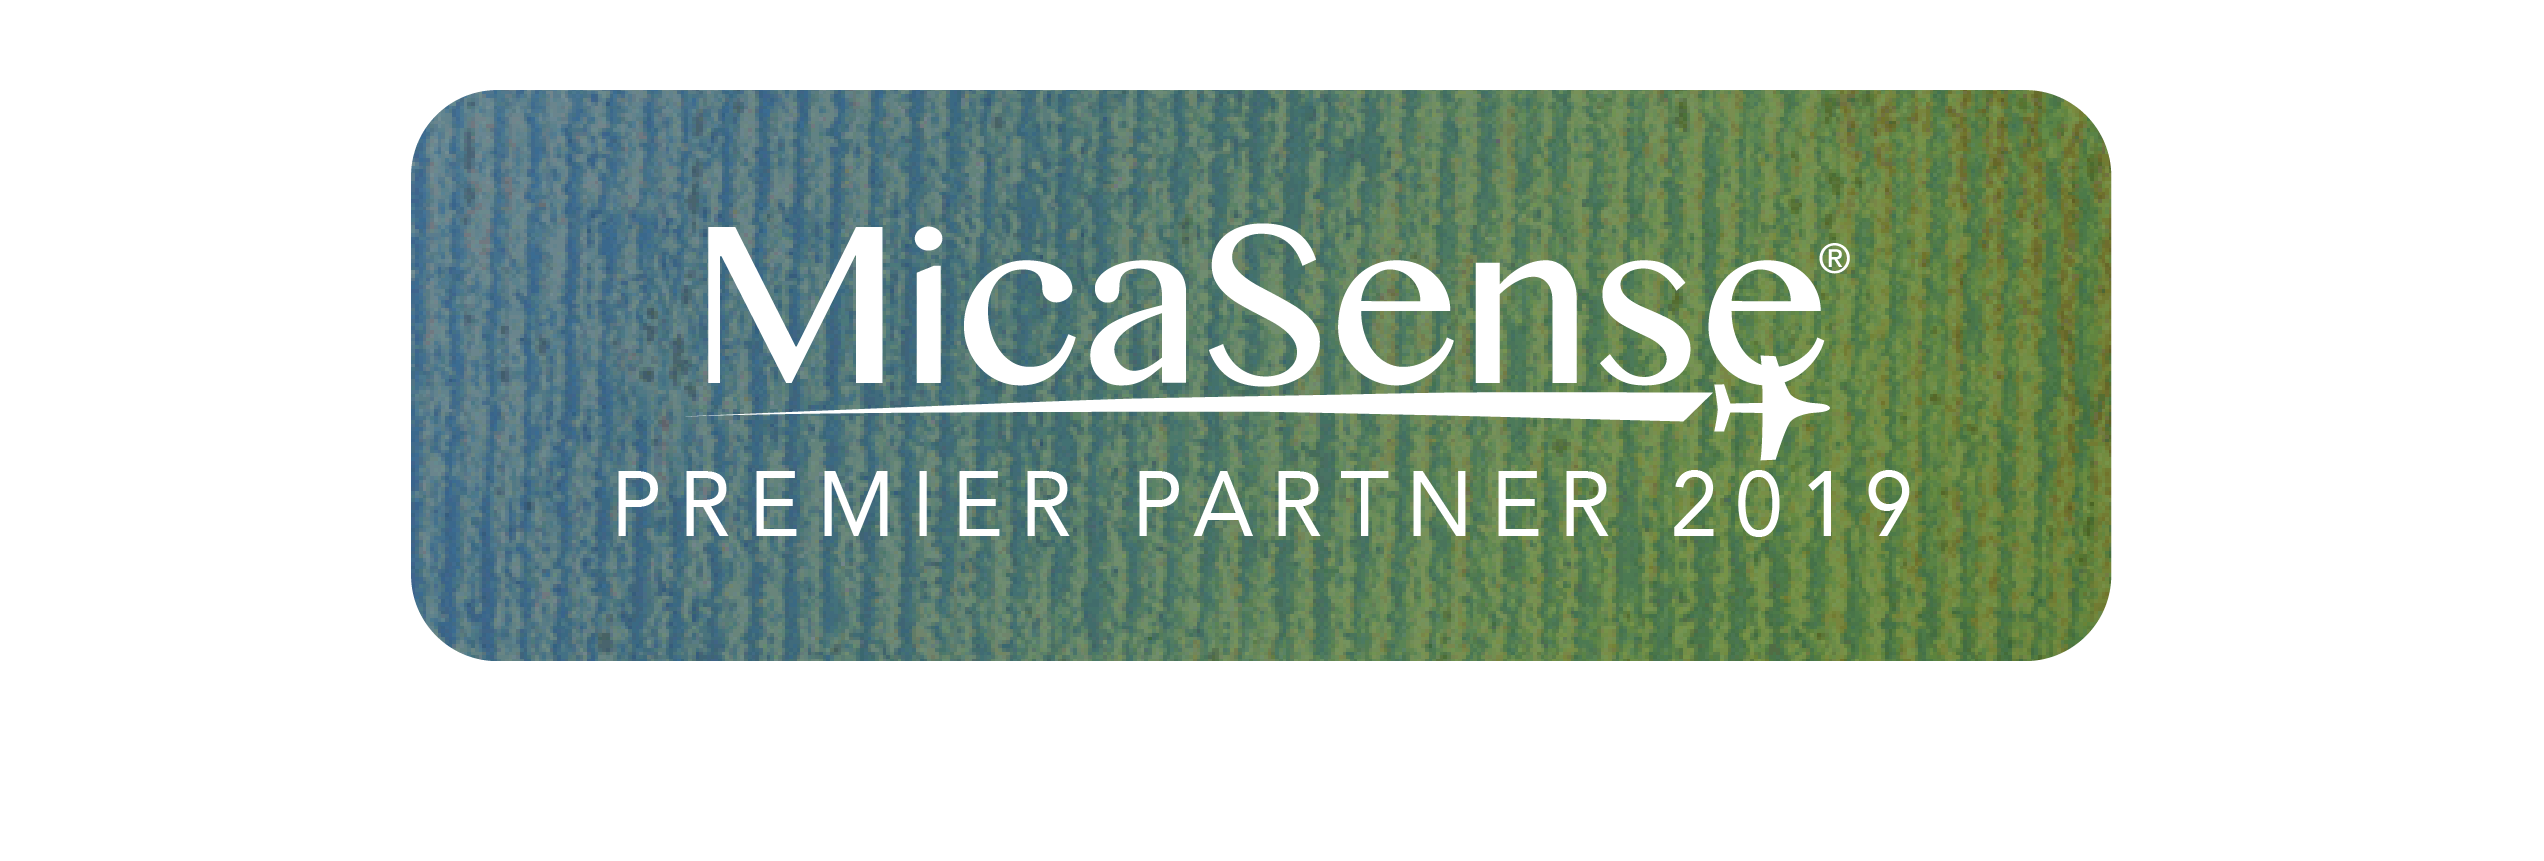 MicaSense社のプレミアムパートナーに選ばれました！